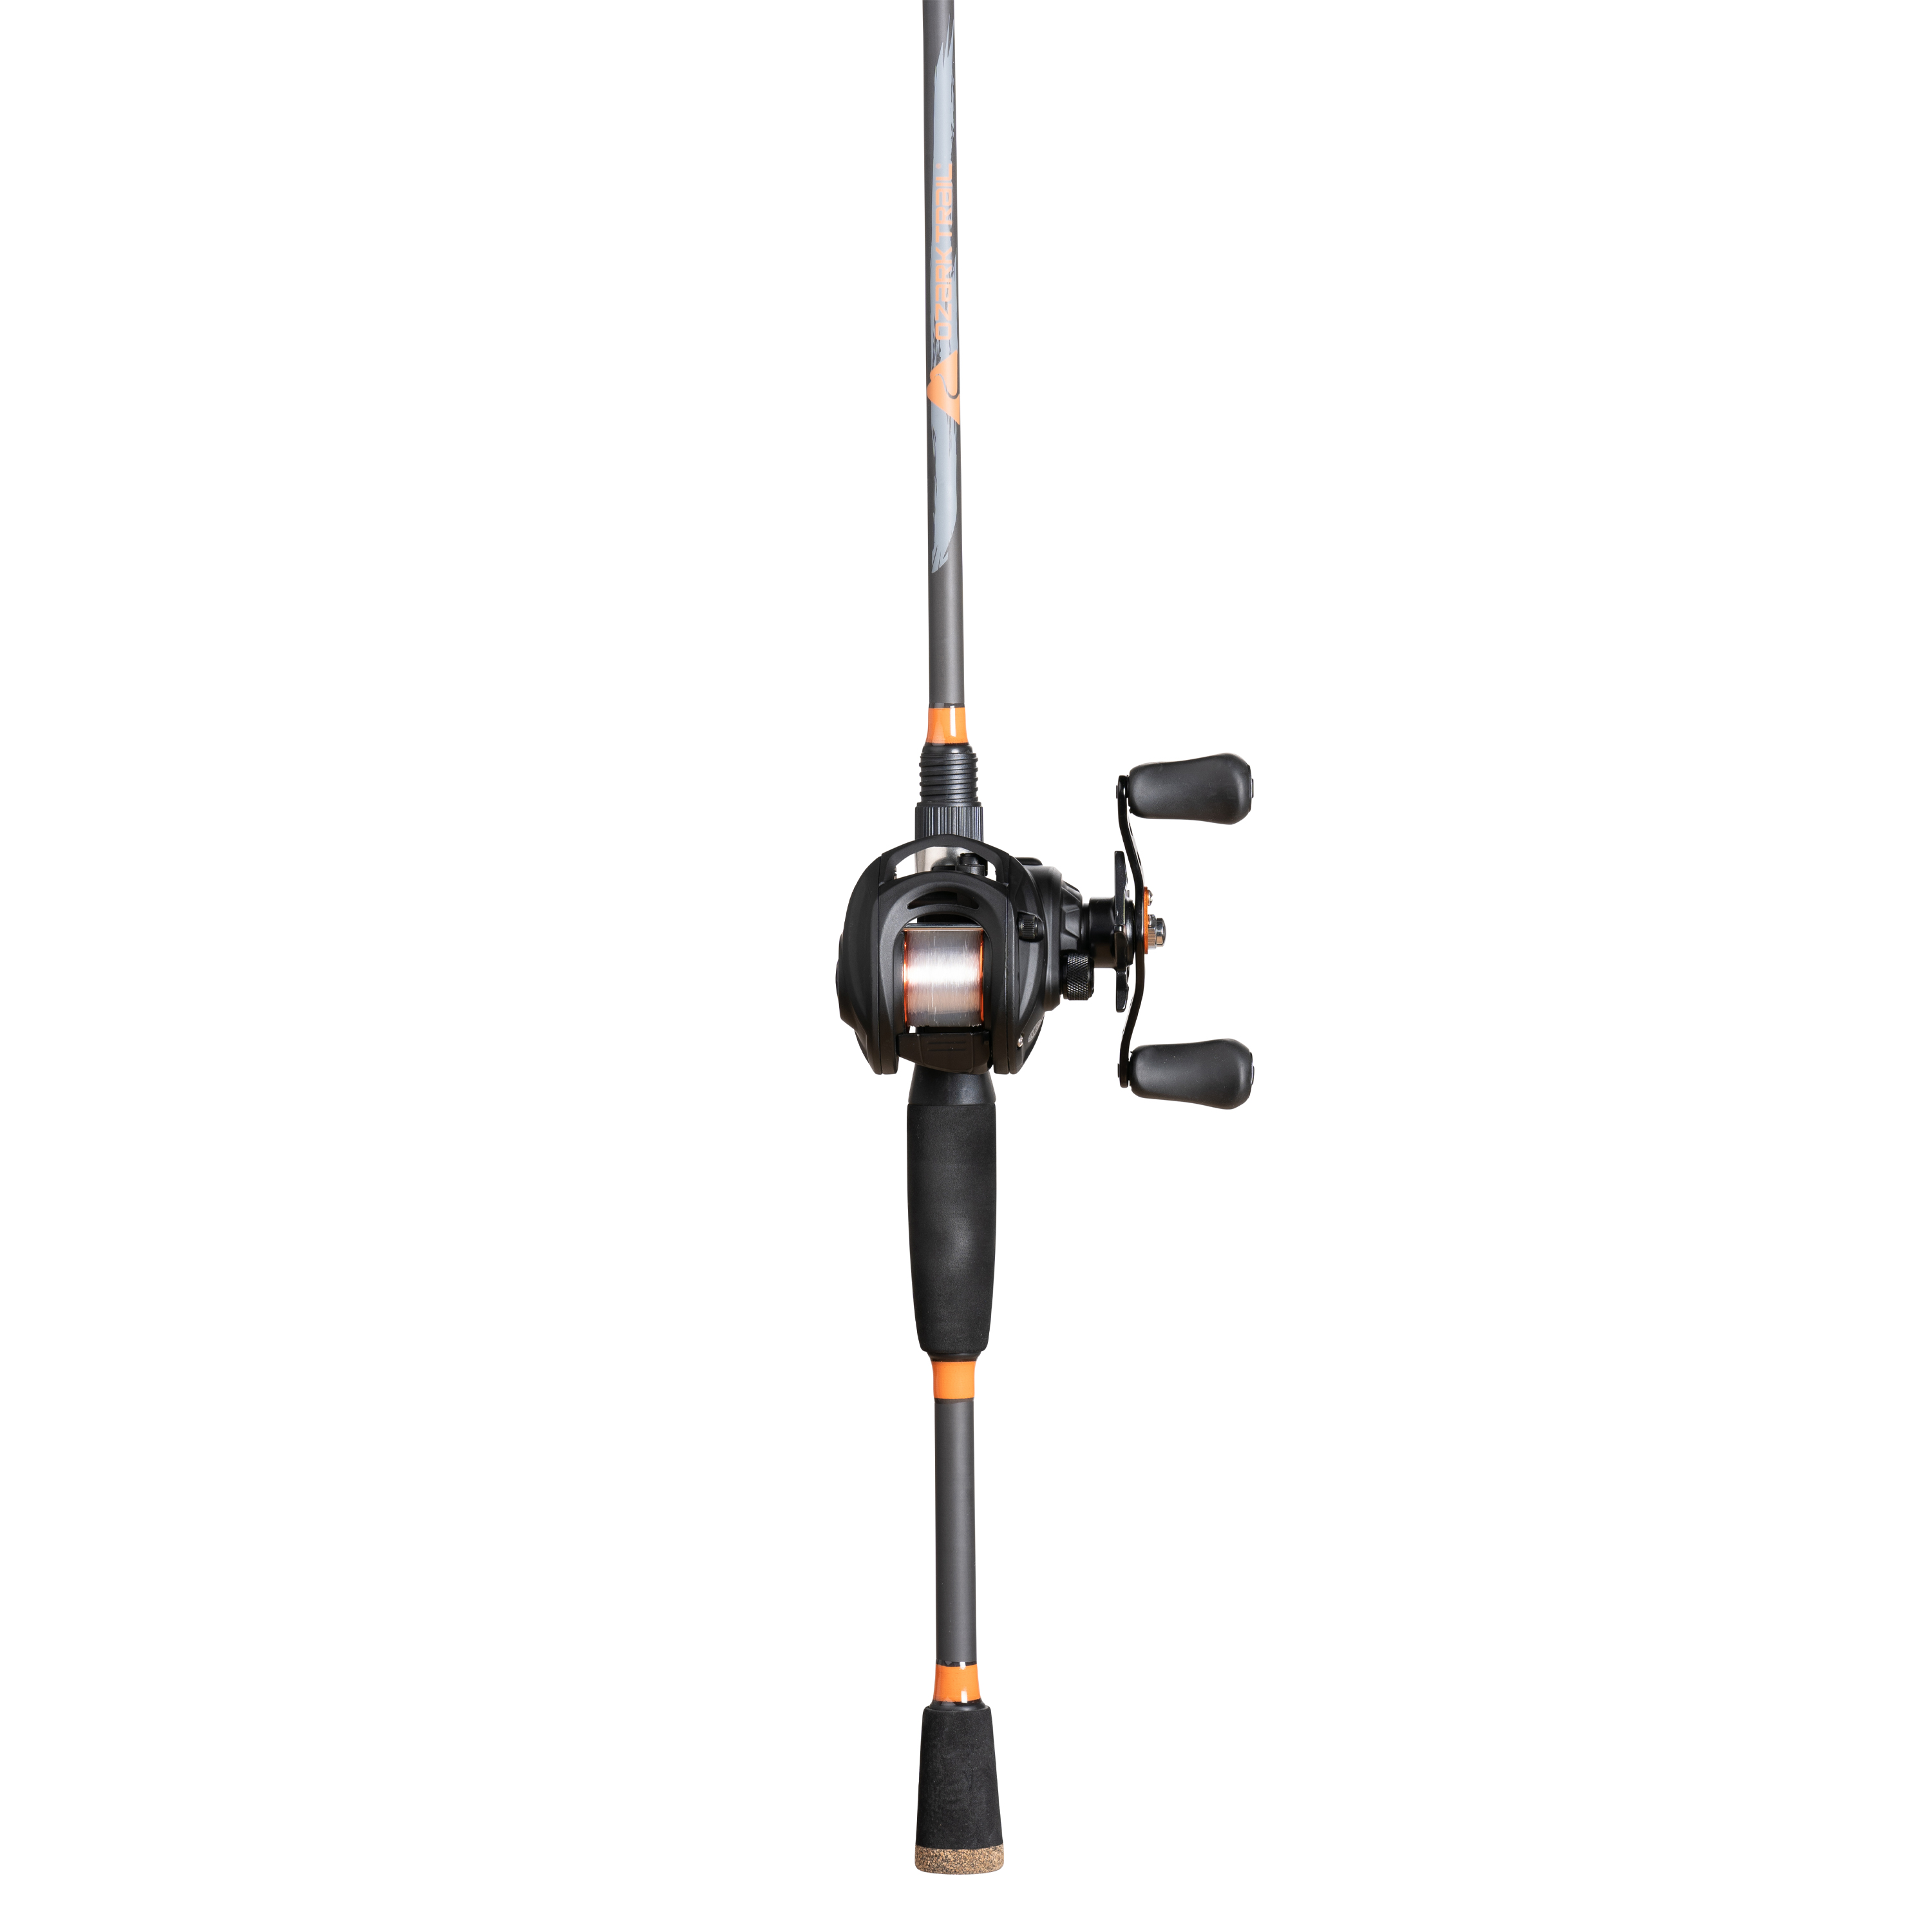 Ozark Trail Baitcast Rod & Reel Fishing Combo, Medium Action, 6.5ft - Black and Orange - image 4 of 7